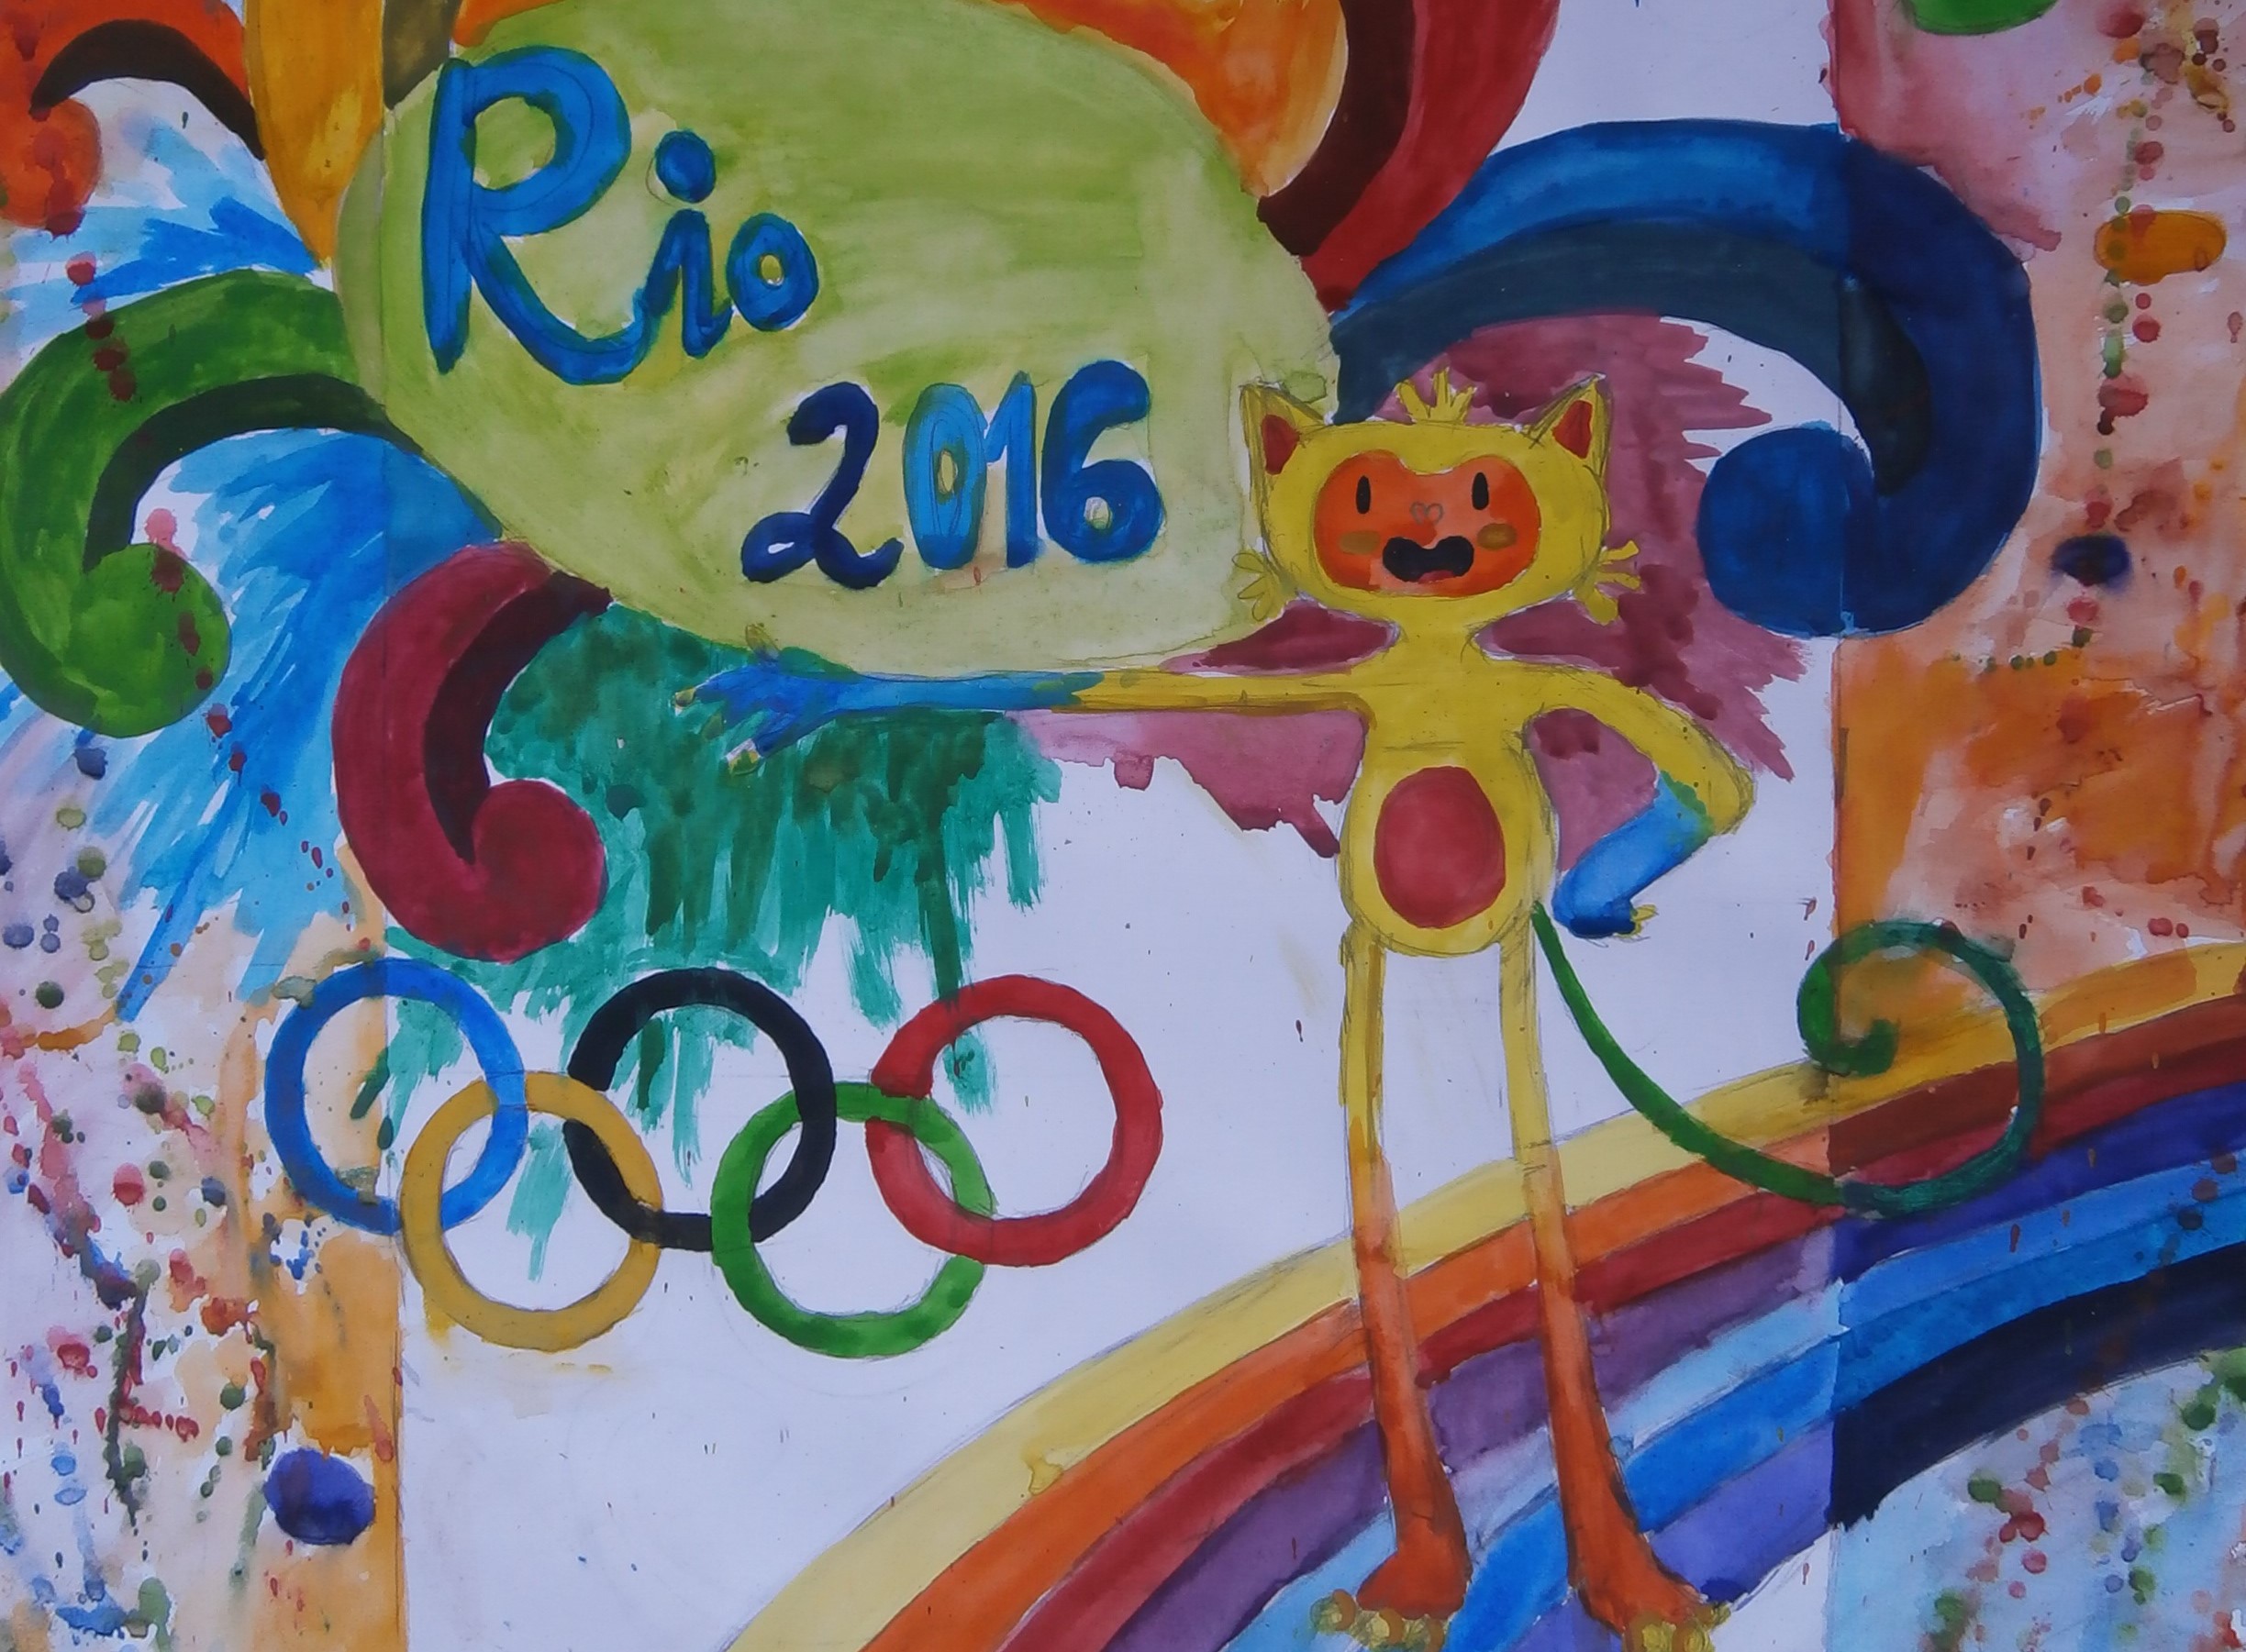 Рио 2016 